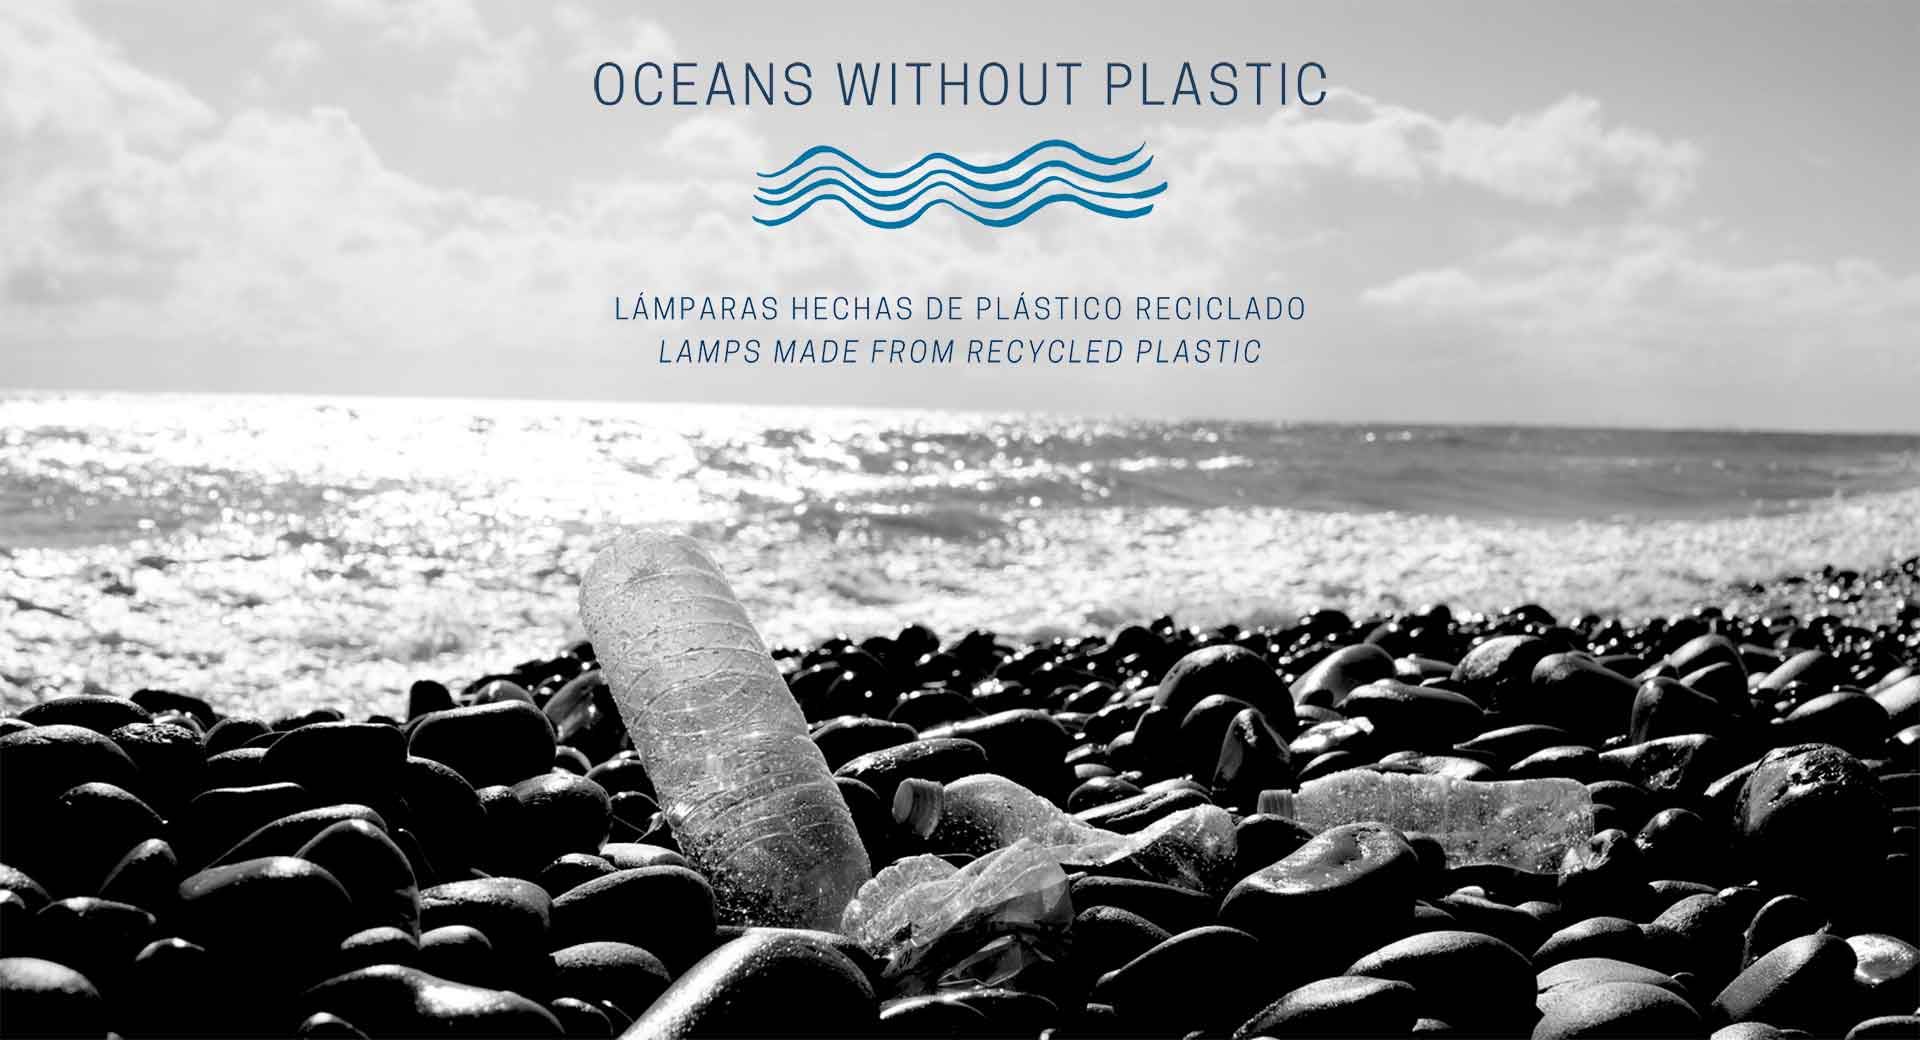 Oceanos sin plástico